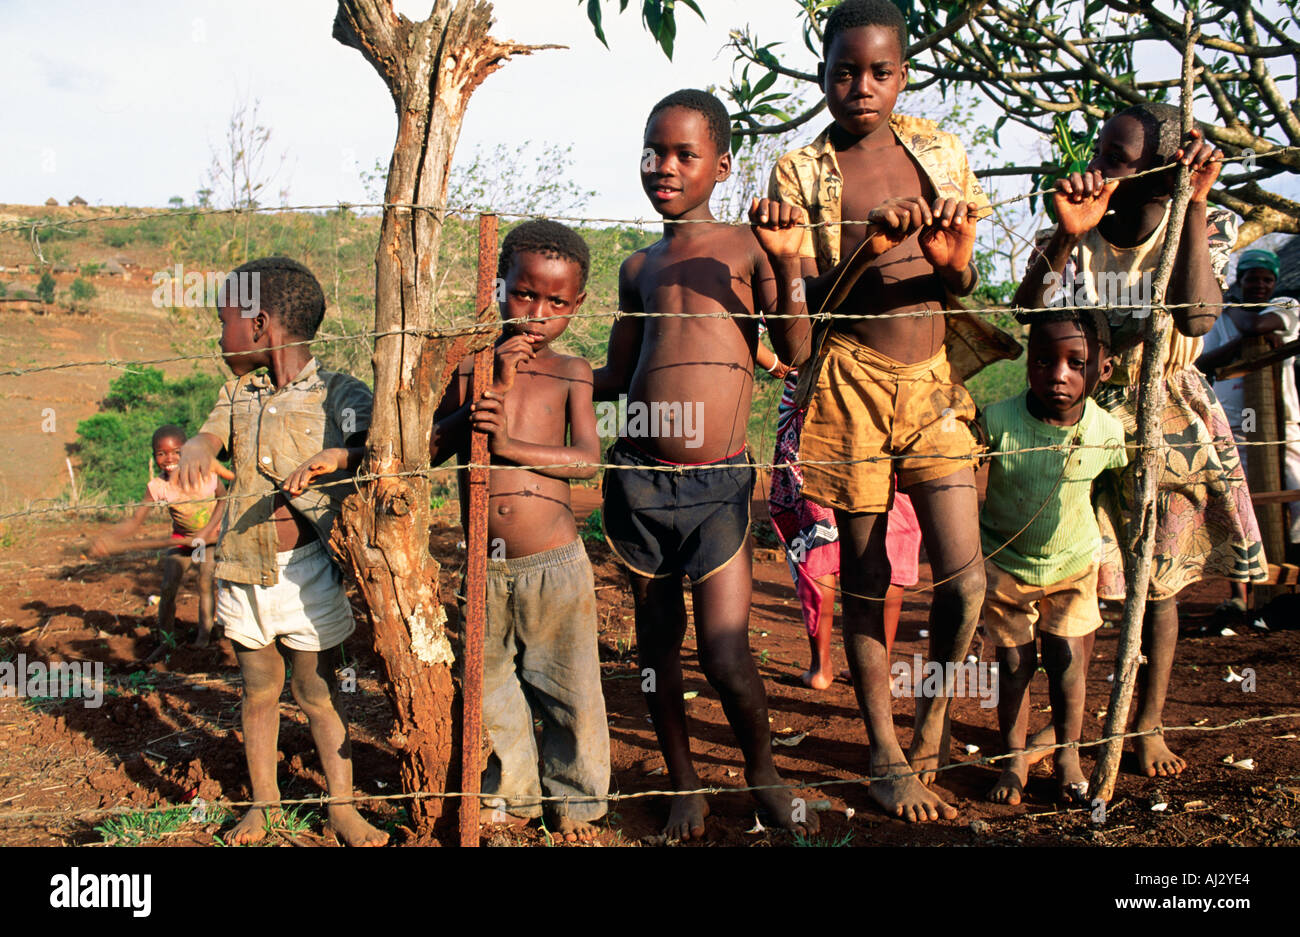 Un ritratto di sei bambini che vivono in povertà rurale in una fattoria di sussistenza, con accesso scarso o nullo all'istruzione. Eswatini (Swaziland) Foto Stock